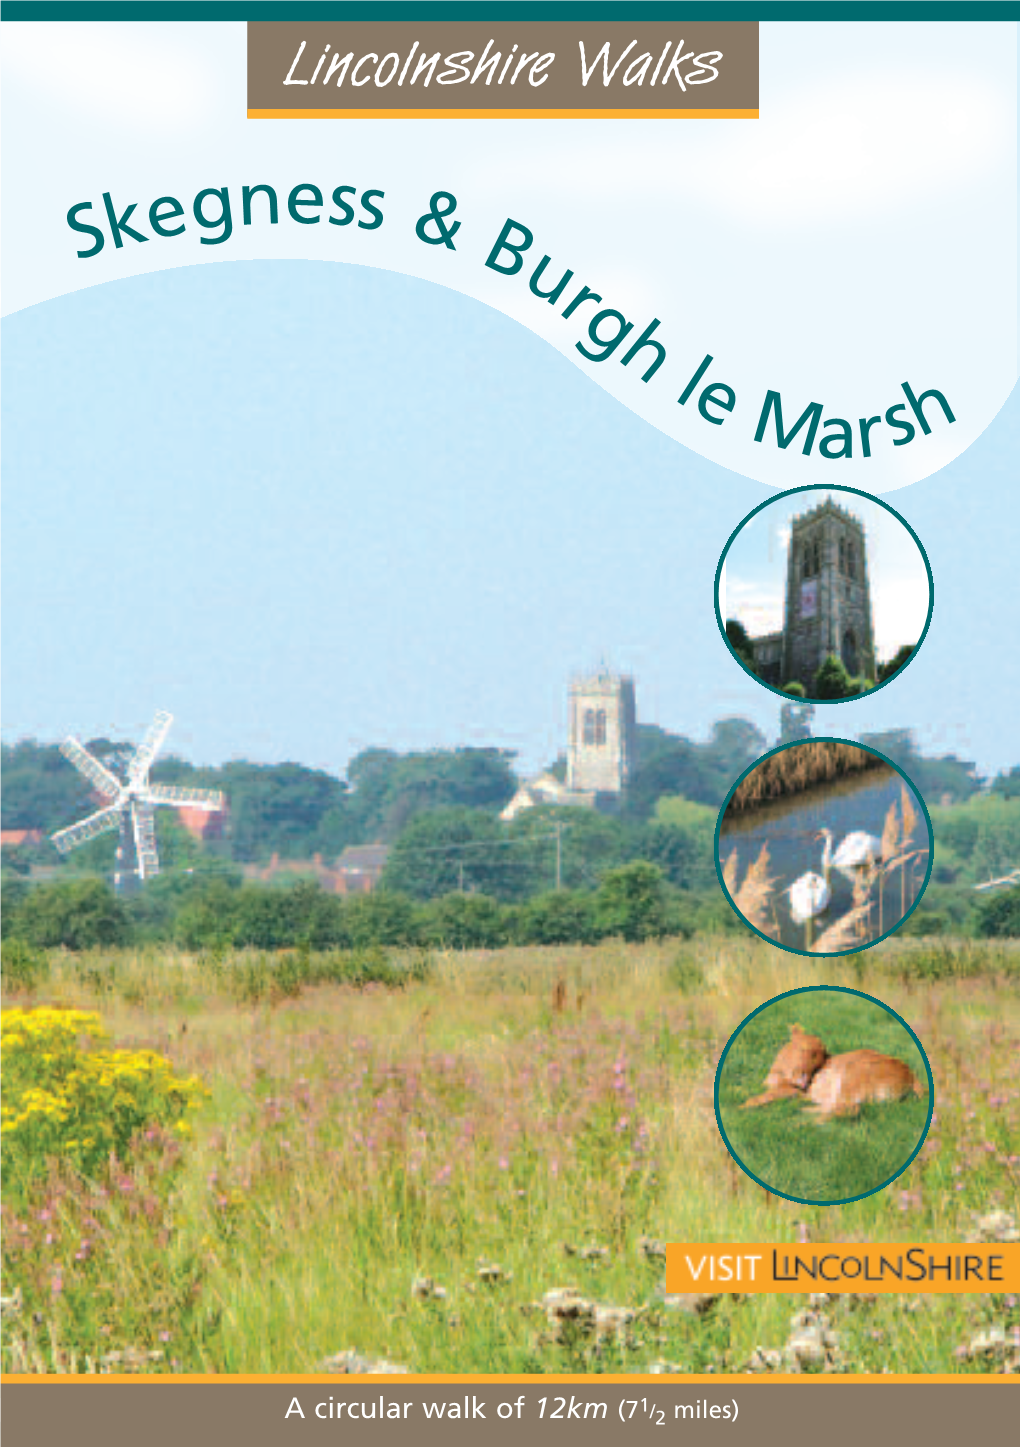 Skegness & Burgh Le Marsh Walk Leaflet